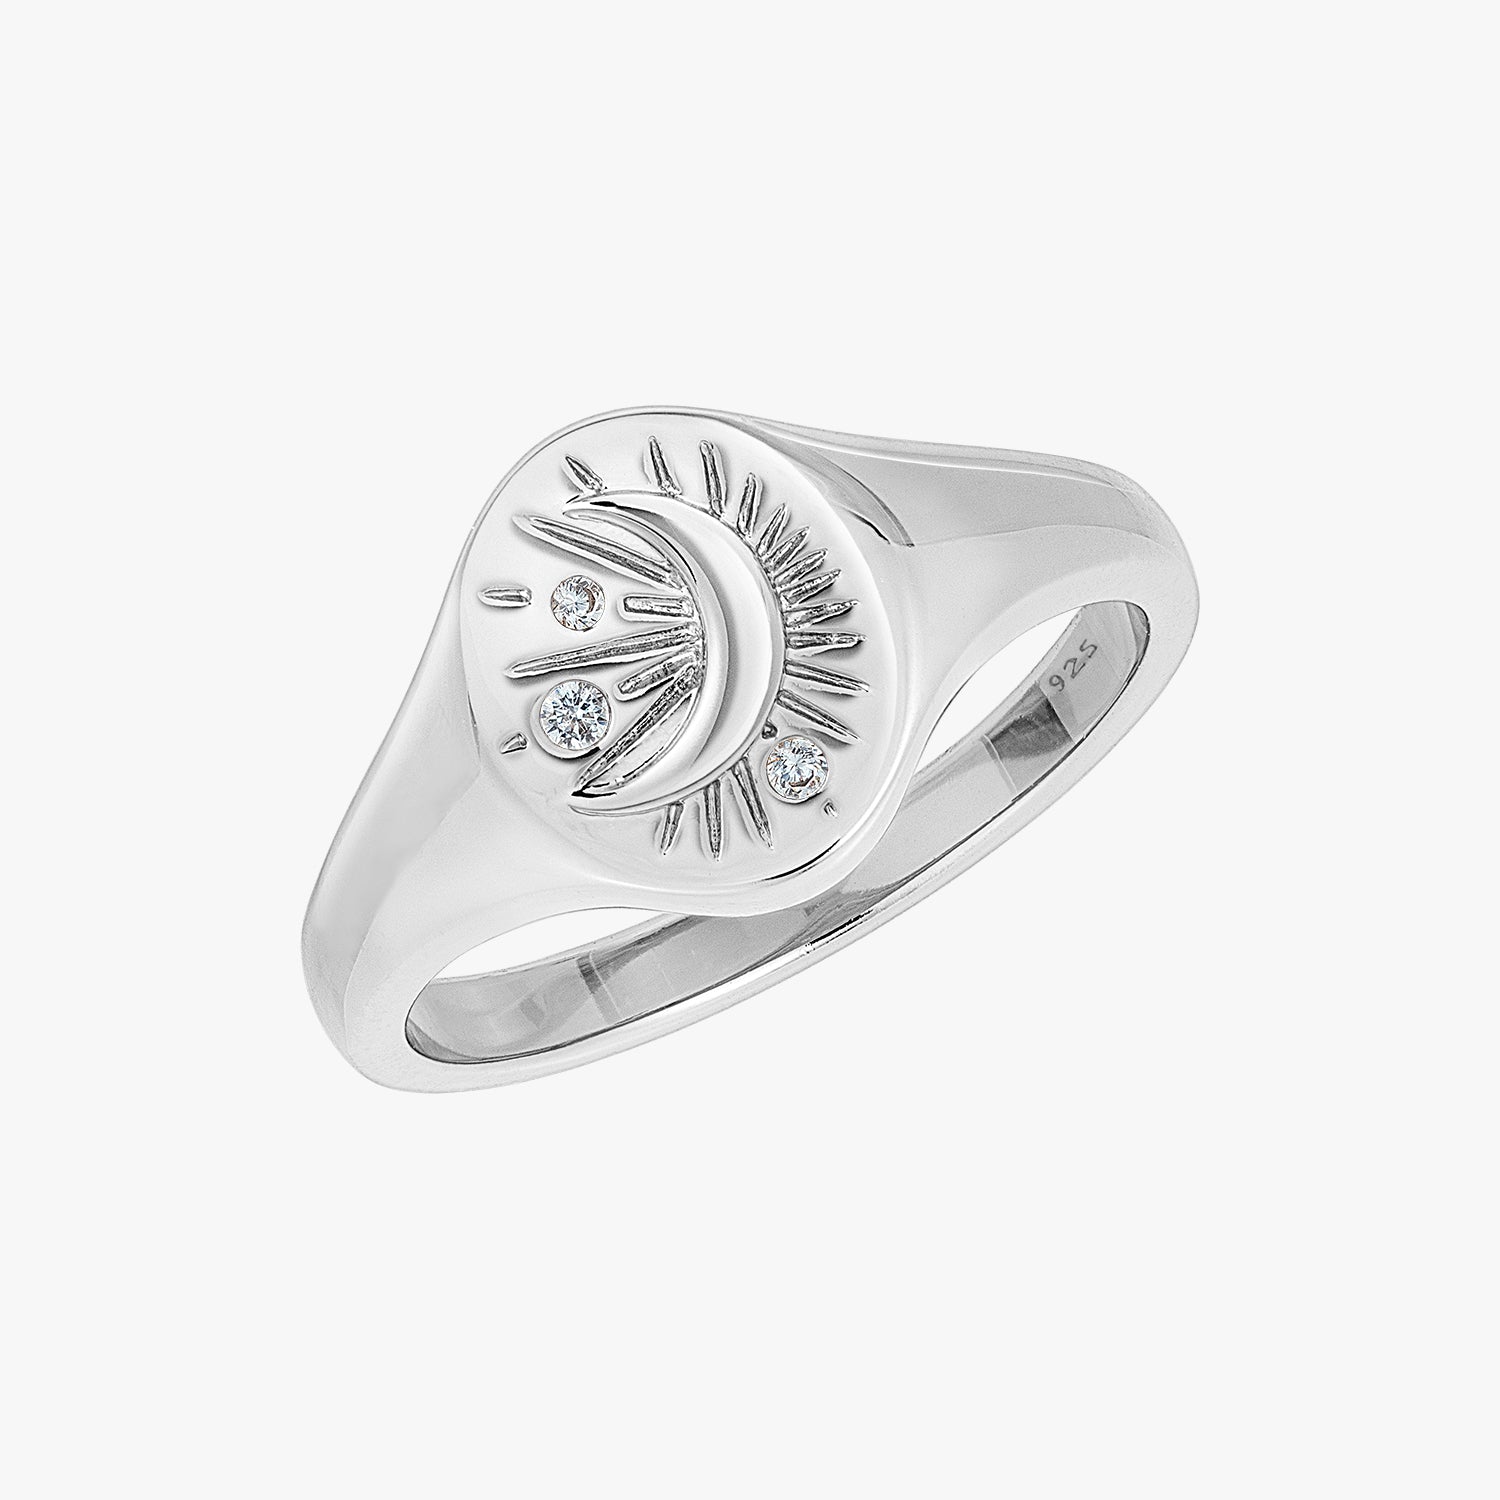 Tarot Moon Signet Ring Silver